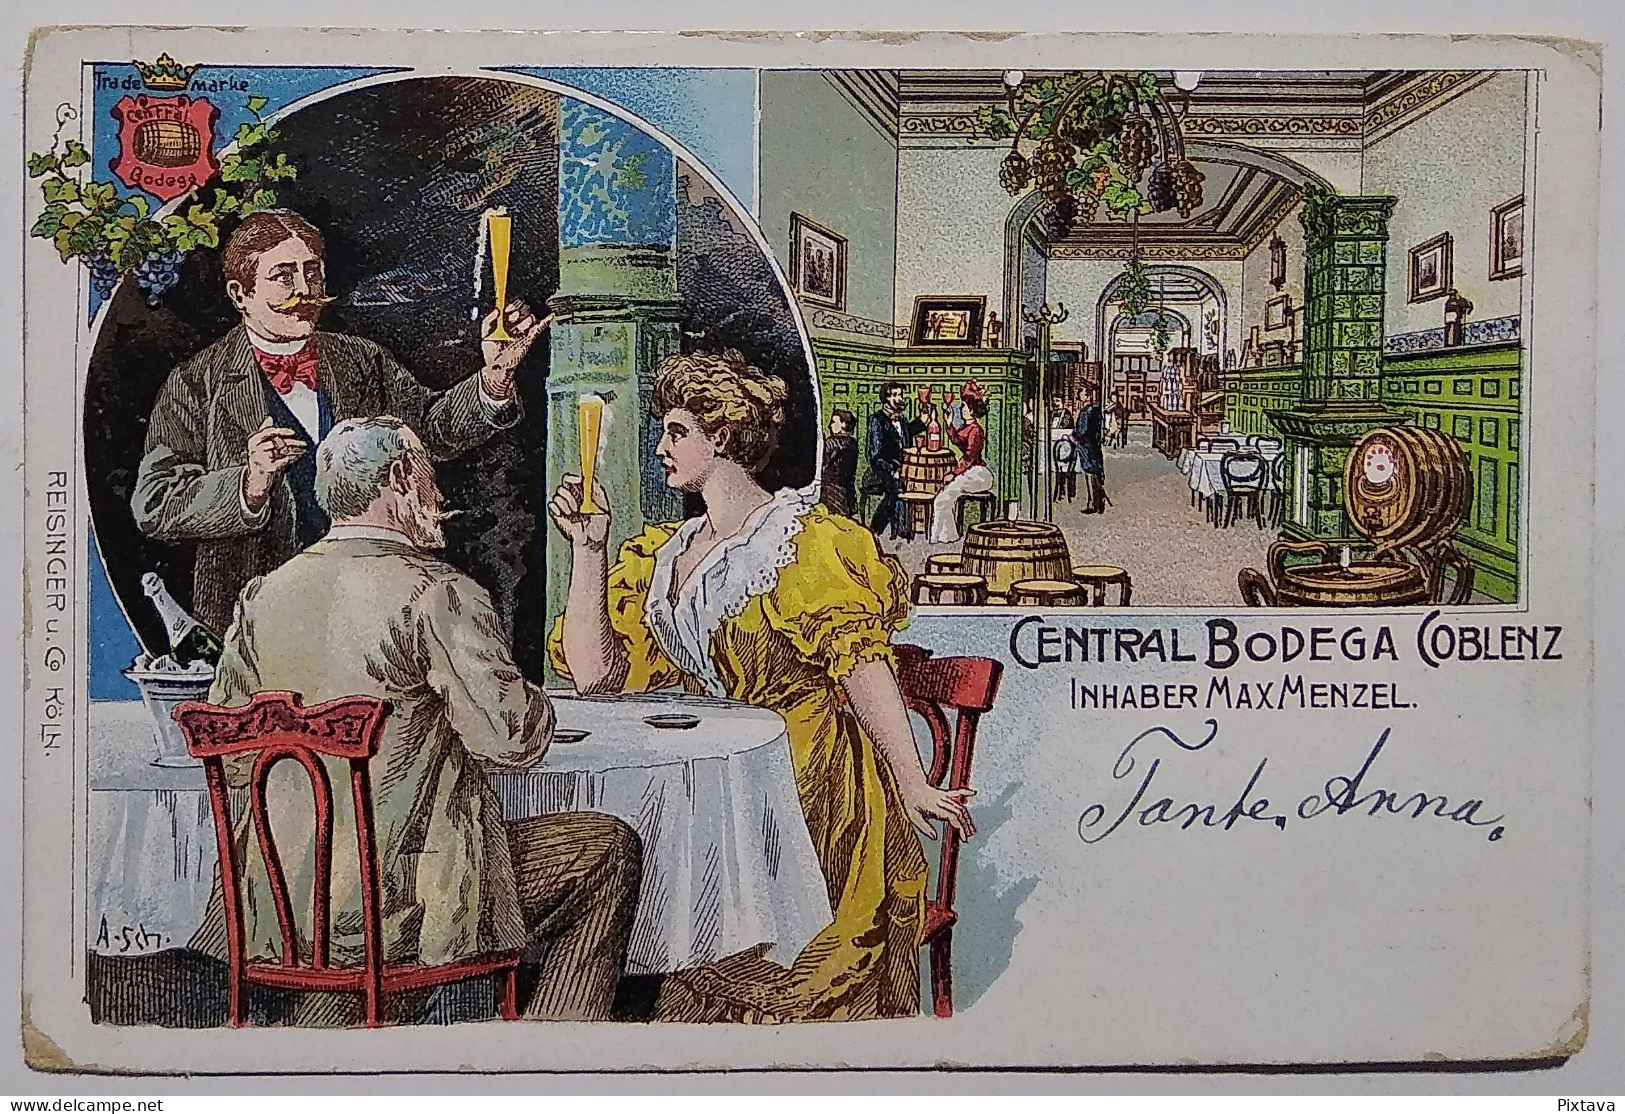 Germany / Central Bodega Coblenz / Inhaber Max Menzel / 1905 / Restaurant / Litho - A Identifier